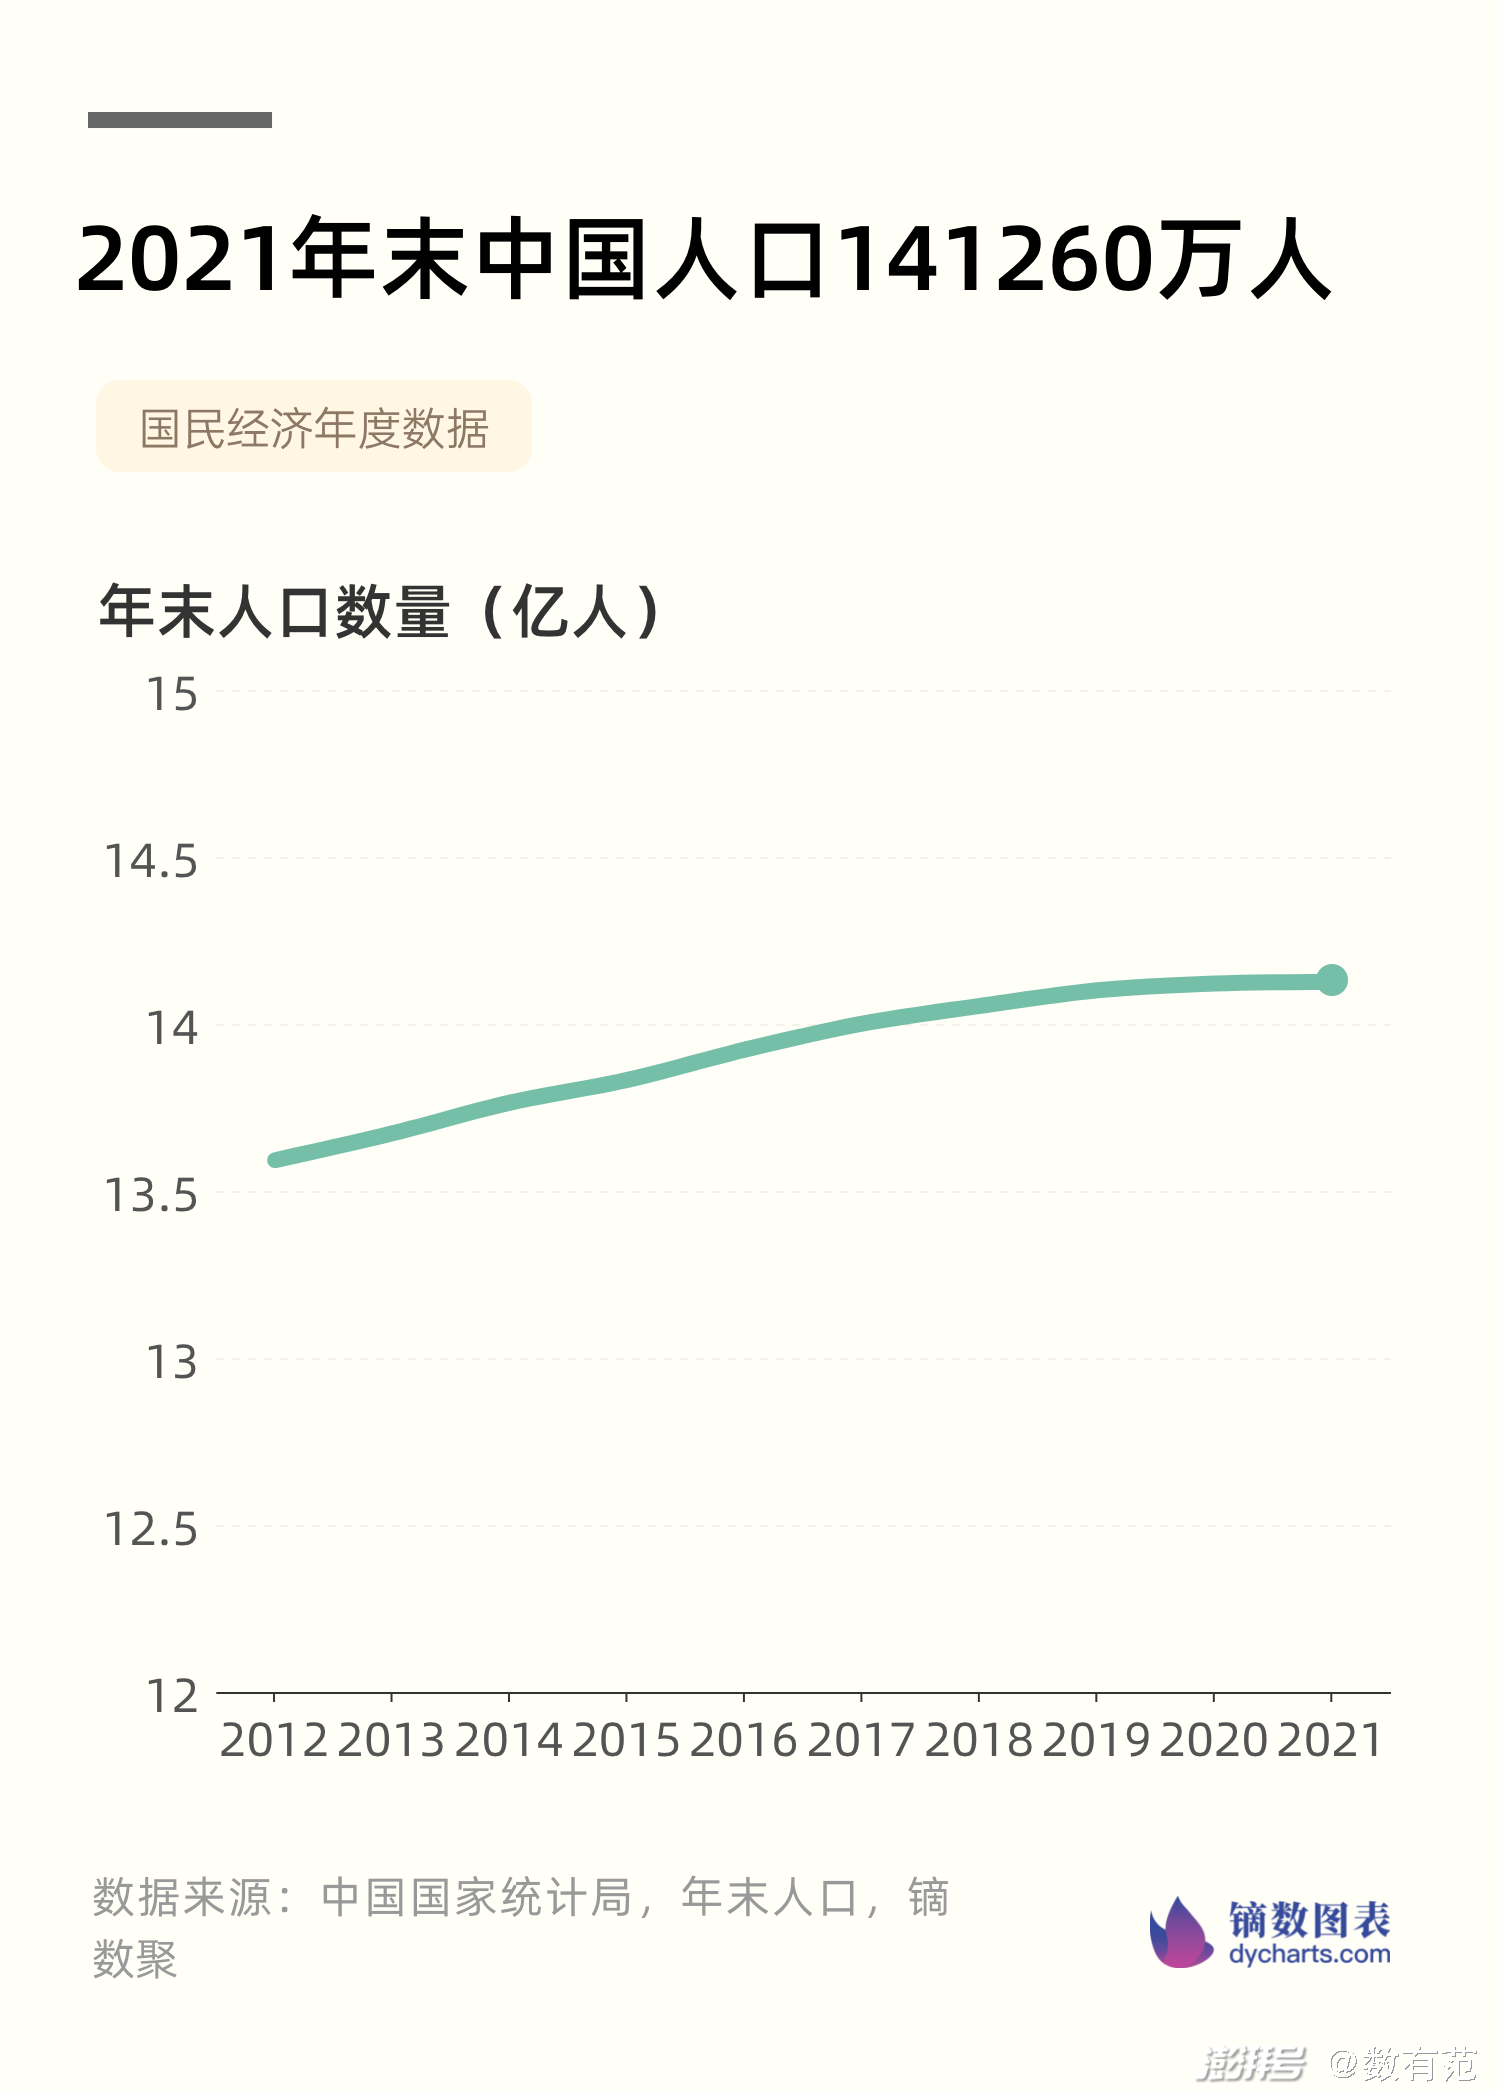 2021年末中国人口141260万人